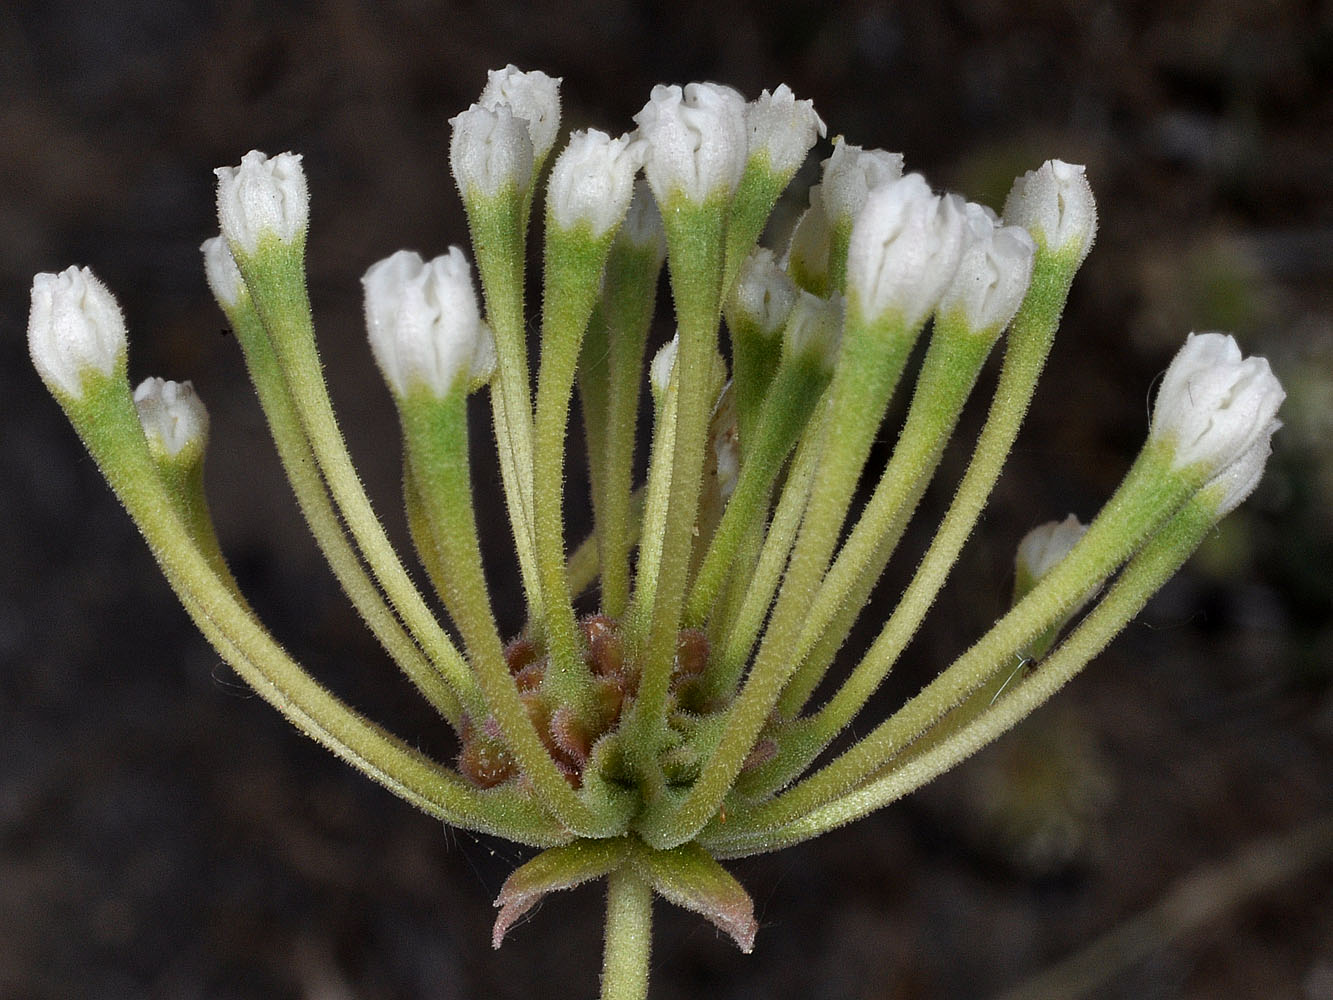 Flora of Eastern Washington Image: Abronia mellifera